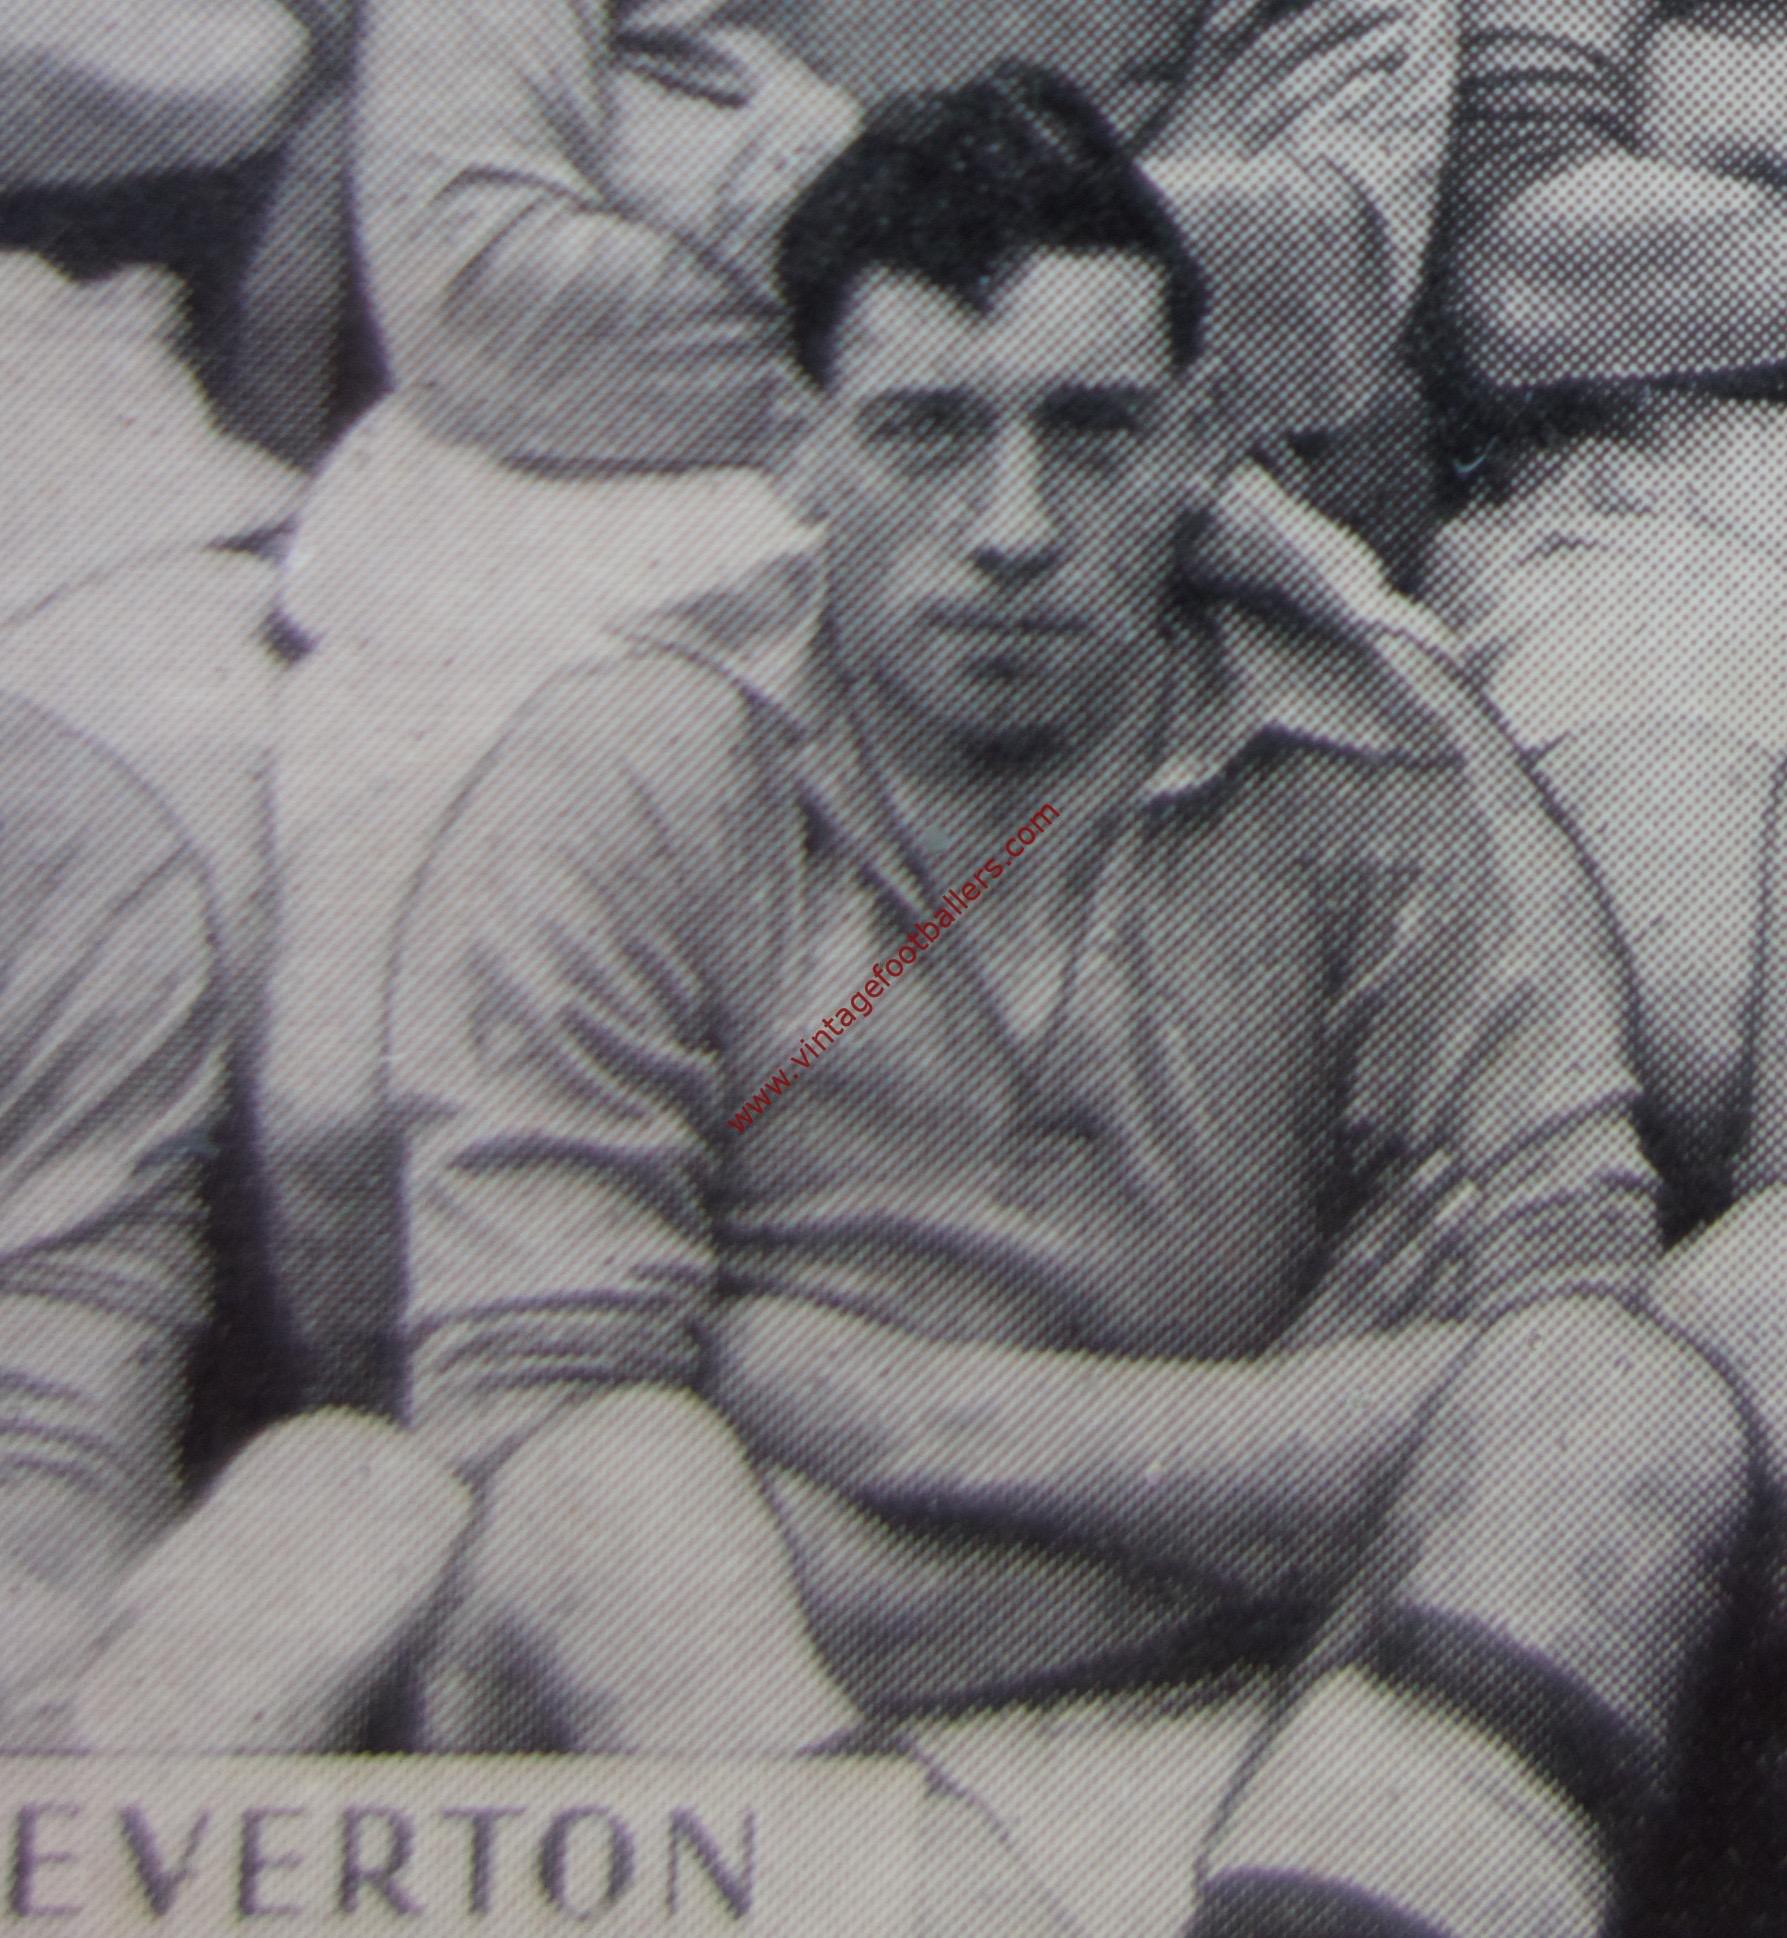 Jones Jack Image 1 Everton 1937 - Vintage Footballers